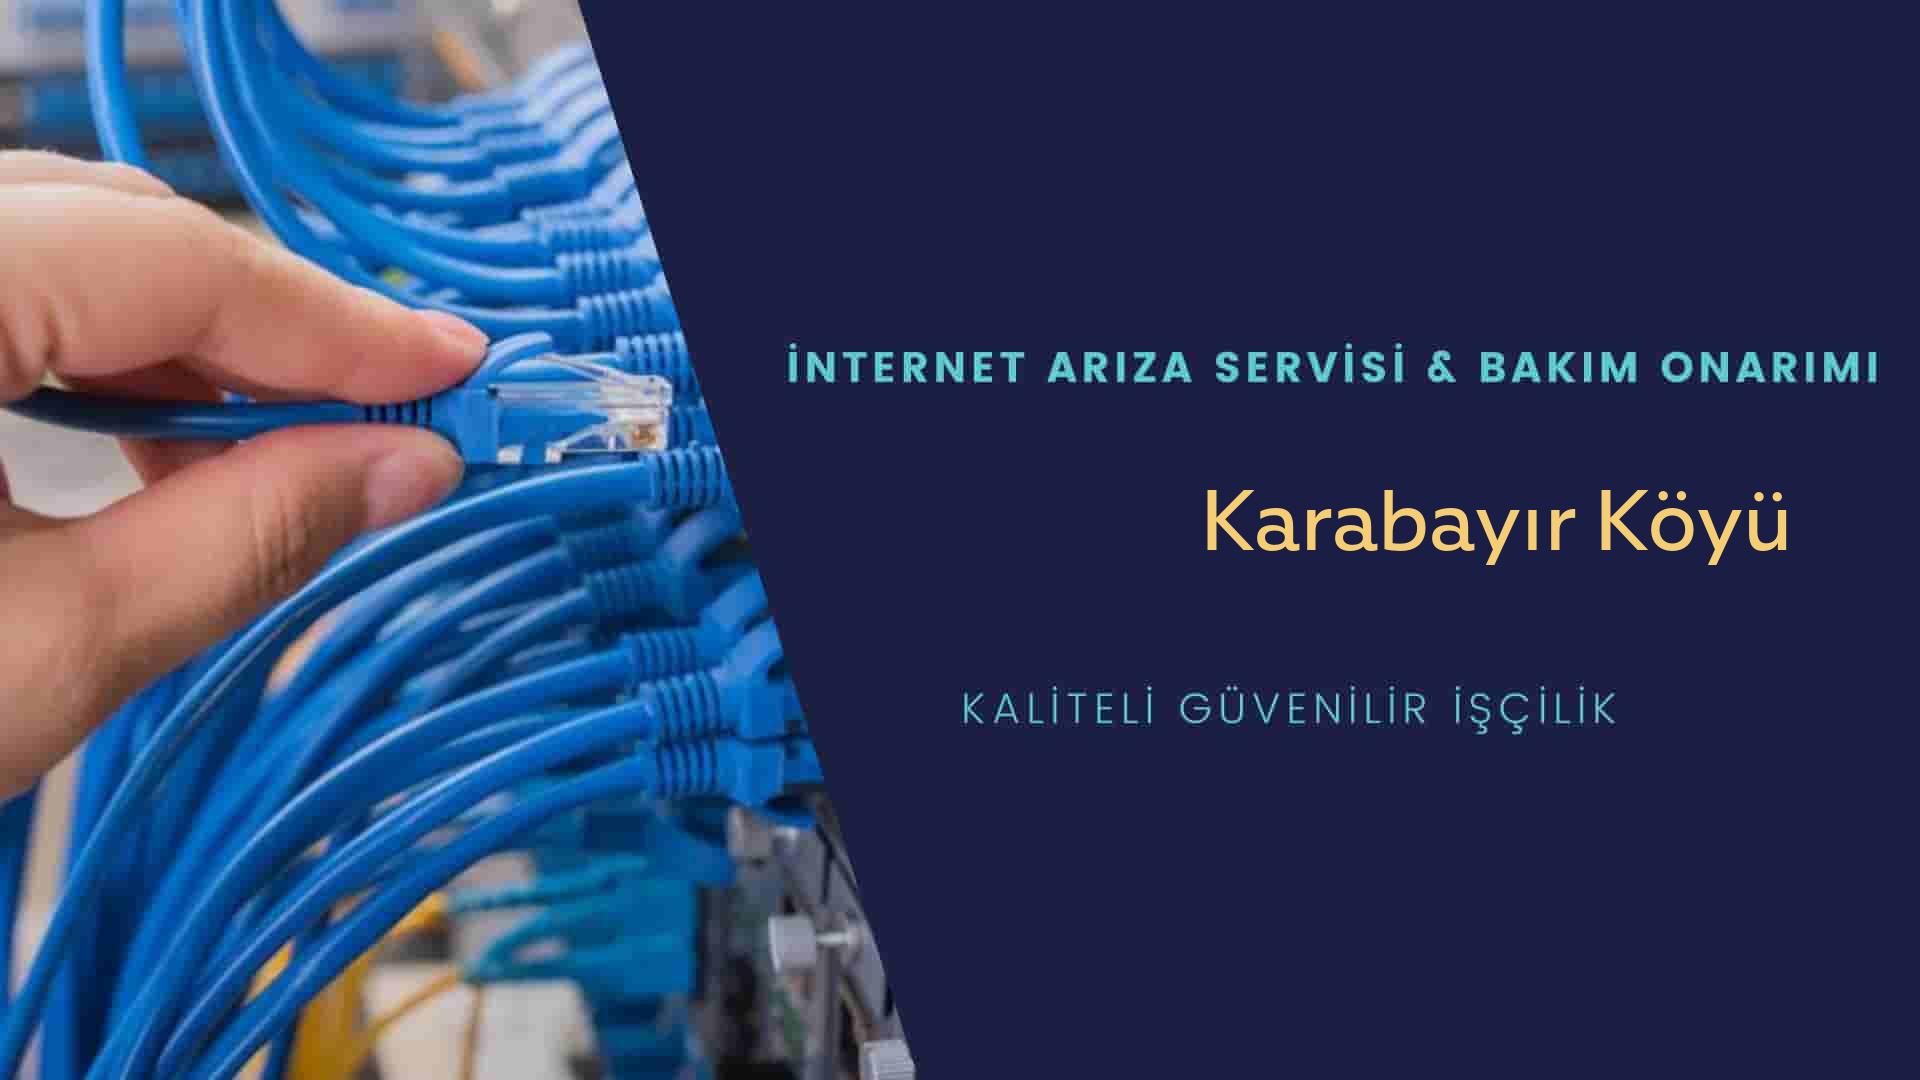 Karabayır Köyü internet kablosu çekimi yapan yerler veya elektrikçiler mi? arıyorsunuz doğru yerdesiniz o zaman sizlere 7/24 yardımcı olacak profesyonel ustalarımız bir telefon kadar yakındır size.